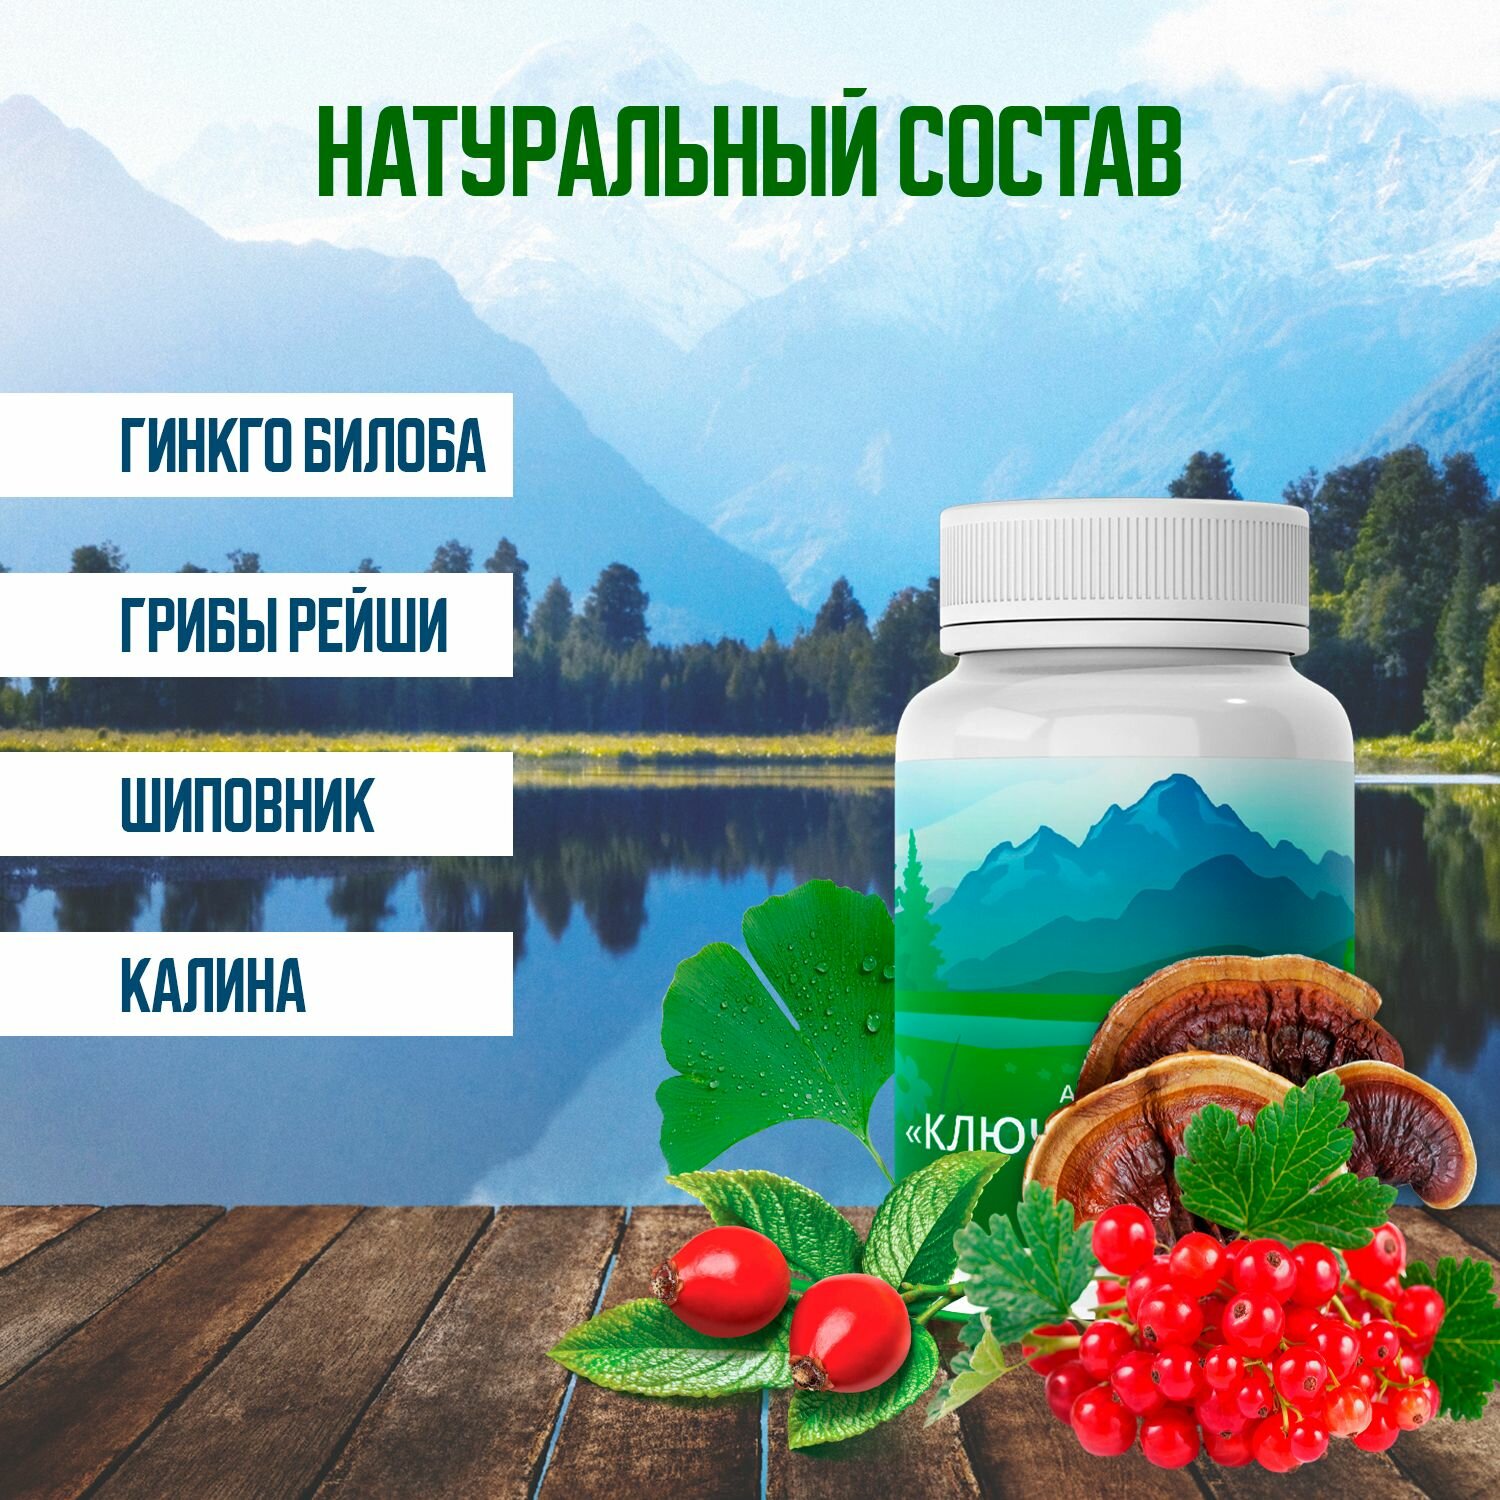 Алтайский ключ здоровья для снижения уровня холестерина